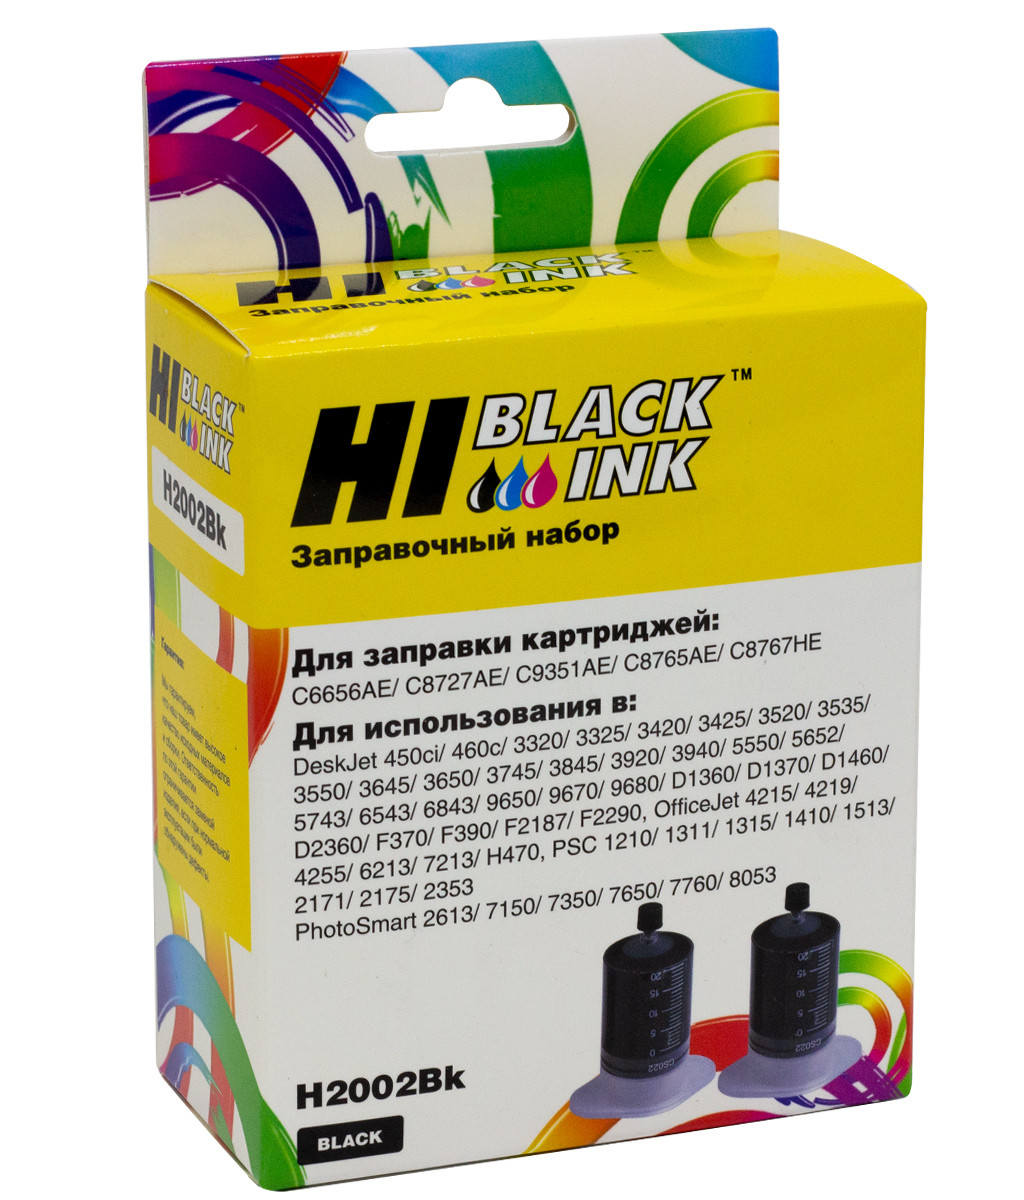 Заправочный набор HP C9351A/ C8765H/ C8767H/ HPC6656A/ C8727A (Hi-Black) NEW2x20ml, black